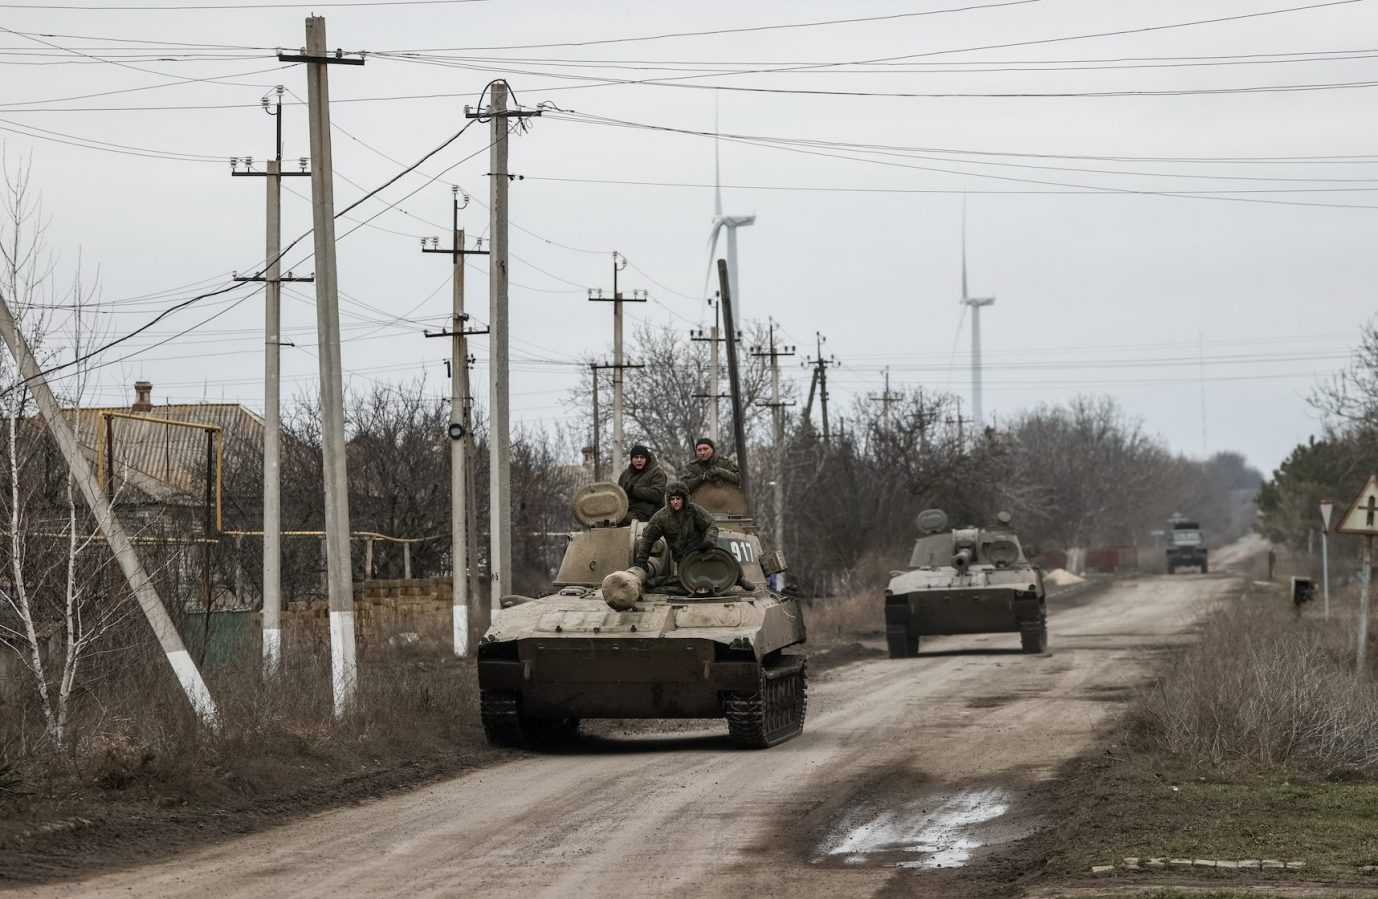 Moskaus Truppen kommen nur langsam voran, der russische Vormarsch im Ukraine-Krieg stockt Foto: picture alliance/dpa/TASS | Sergei Bobylev